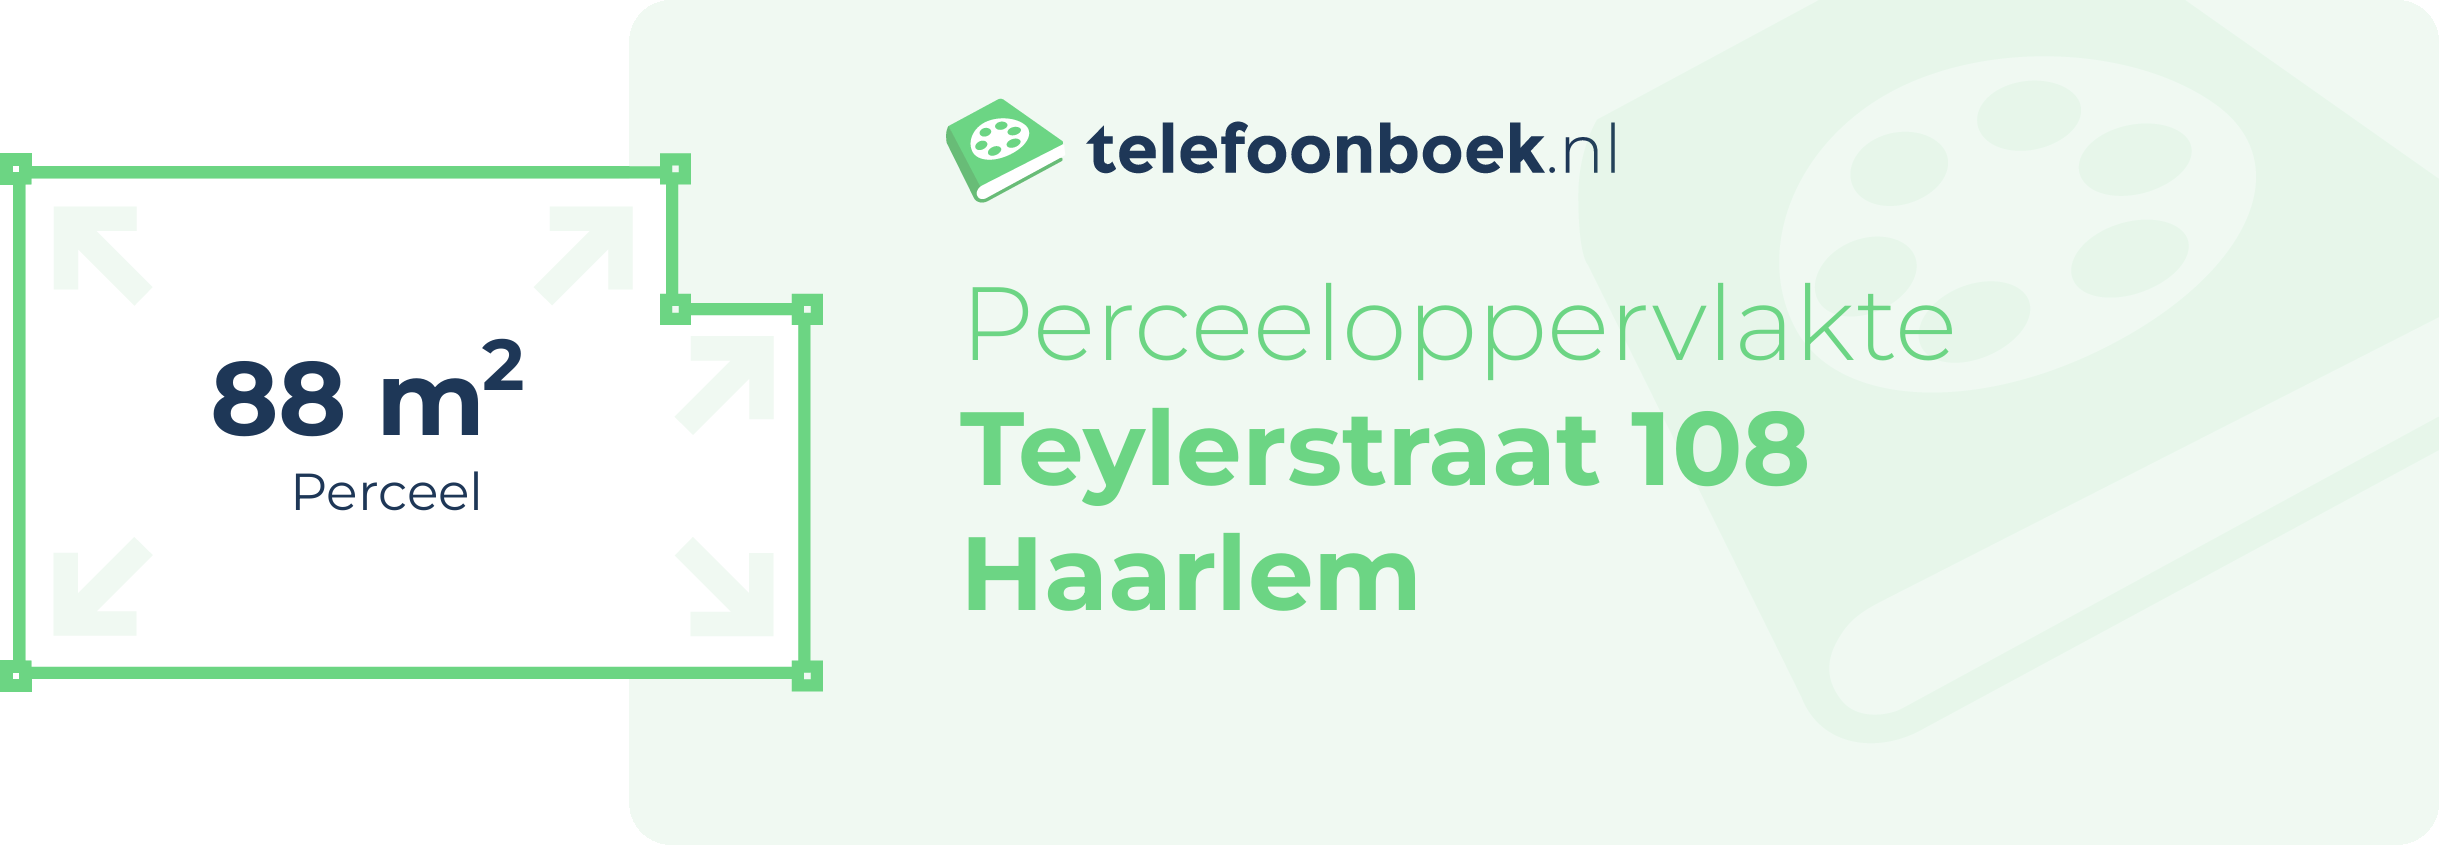 Perceeloppervlakte Teylerstraat 108 Haarlem